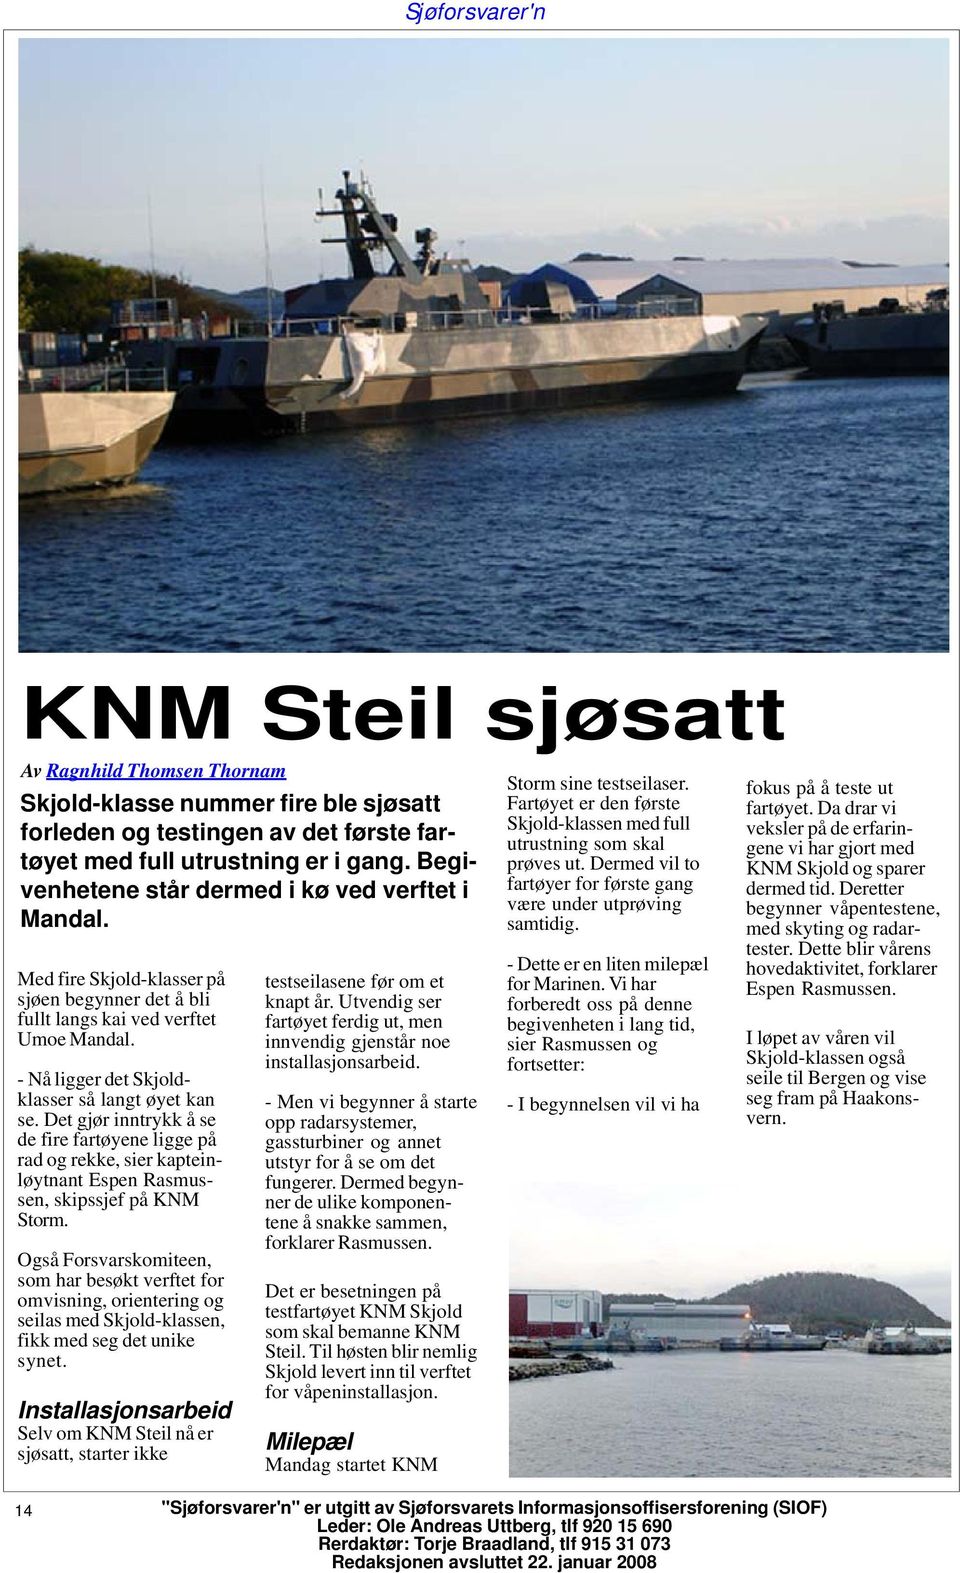 Det gjør inntrykk å se de fire fartøyene ligge på rad og rekke, sier kapteinløytnant Espen Rasmussen, skipssjef på KNM Storm.